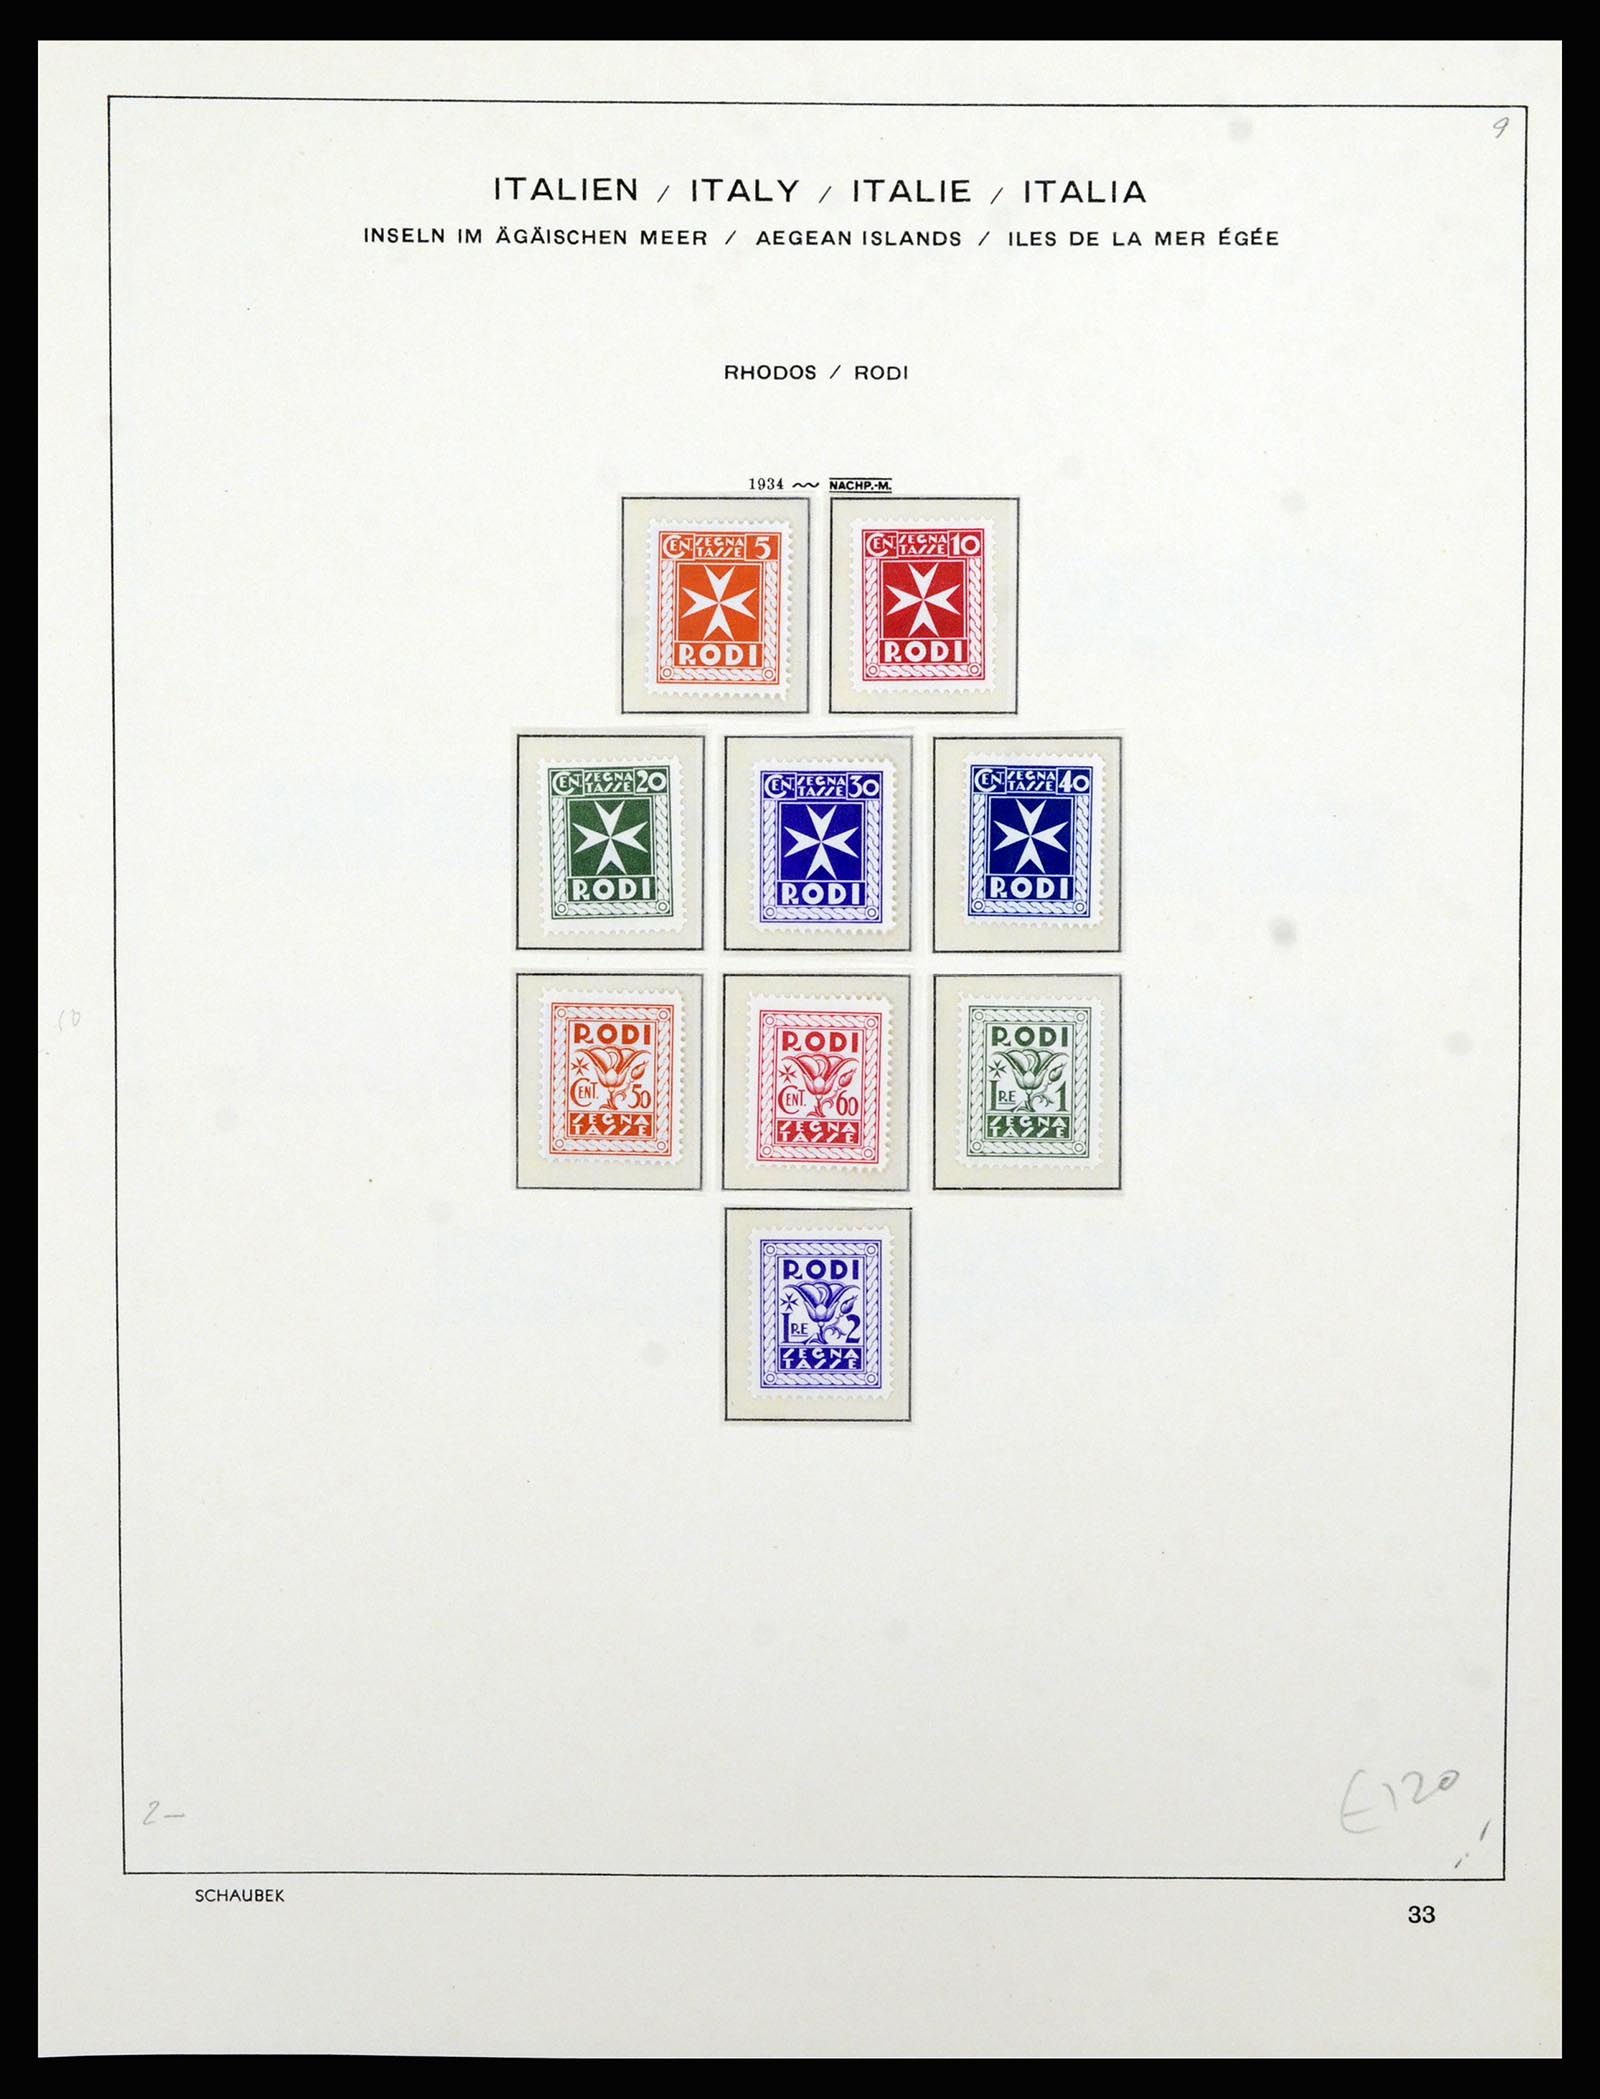 36577 060 - Stamp collection 36577 Italiaanse gebieden 1870-1940.